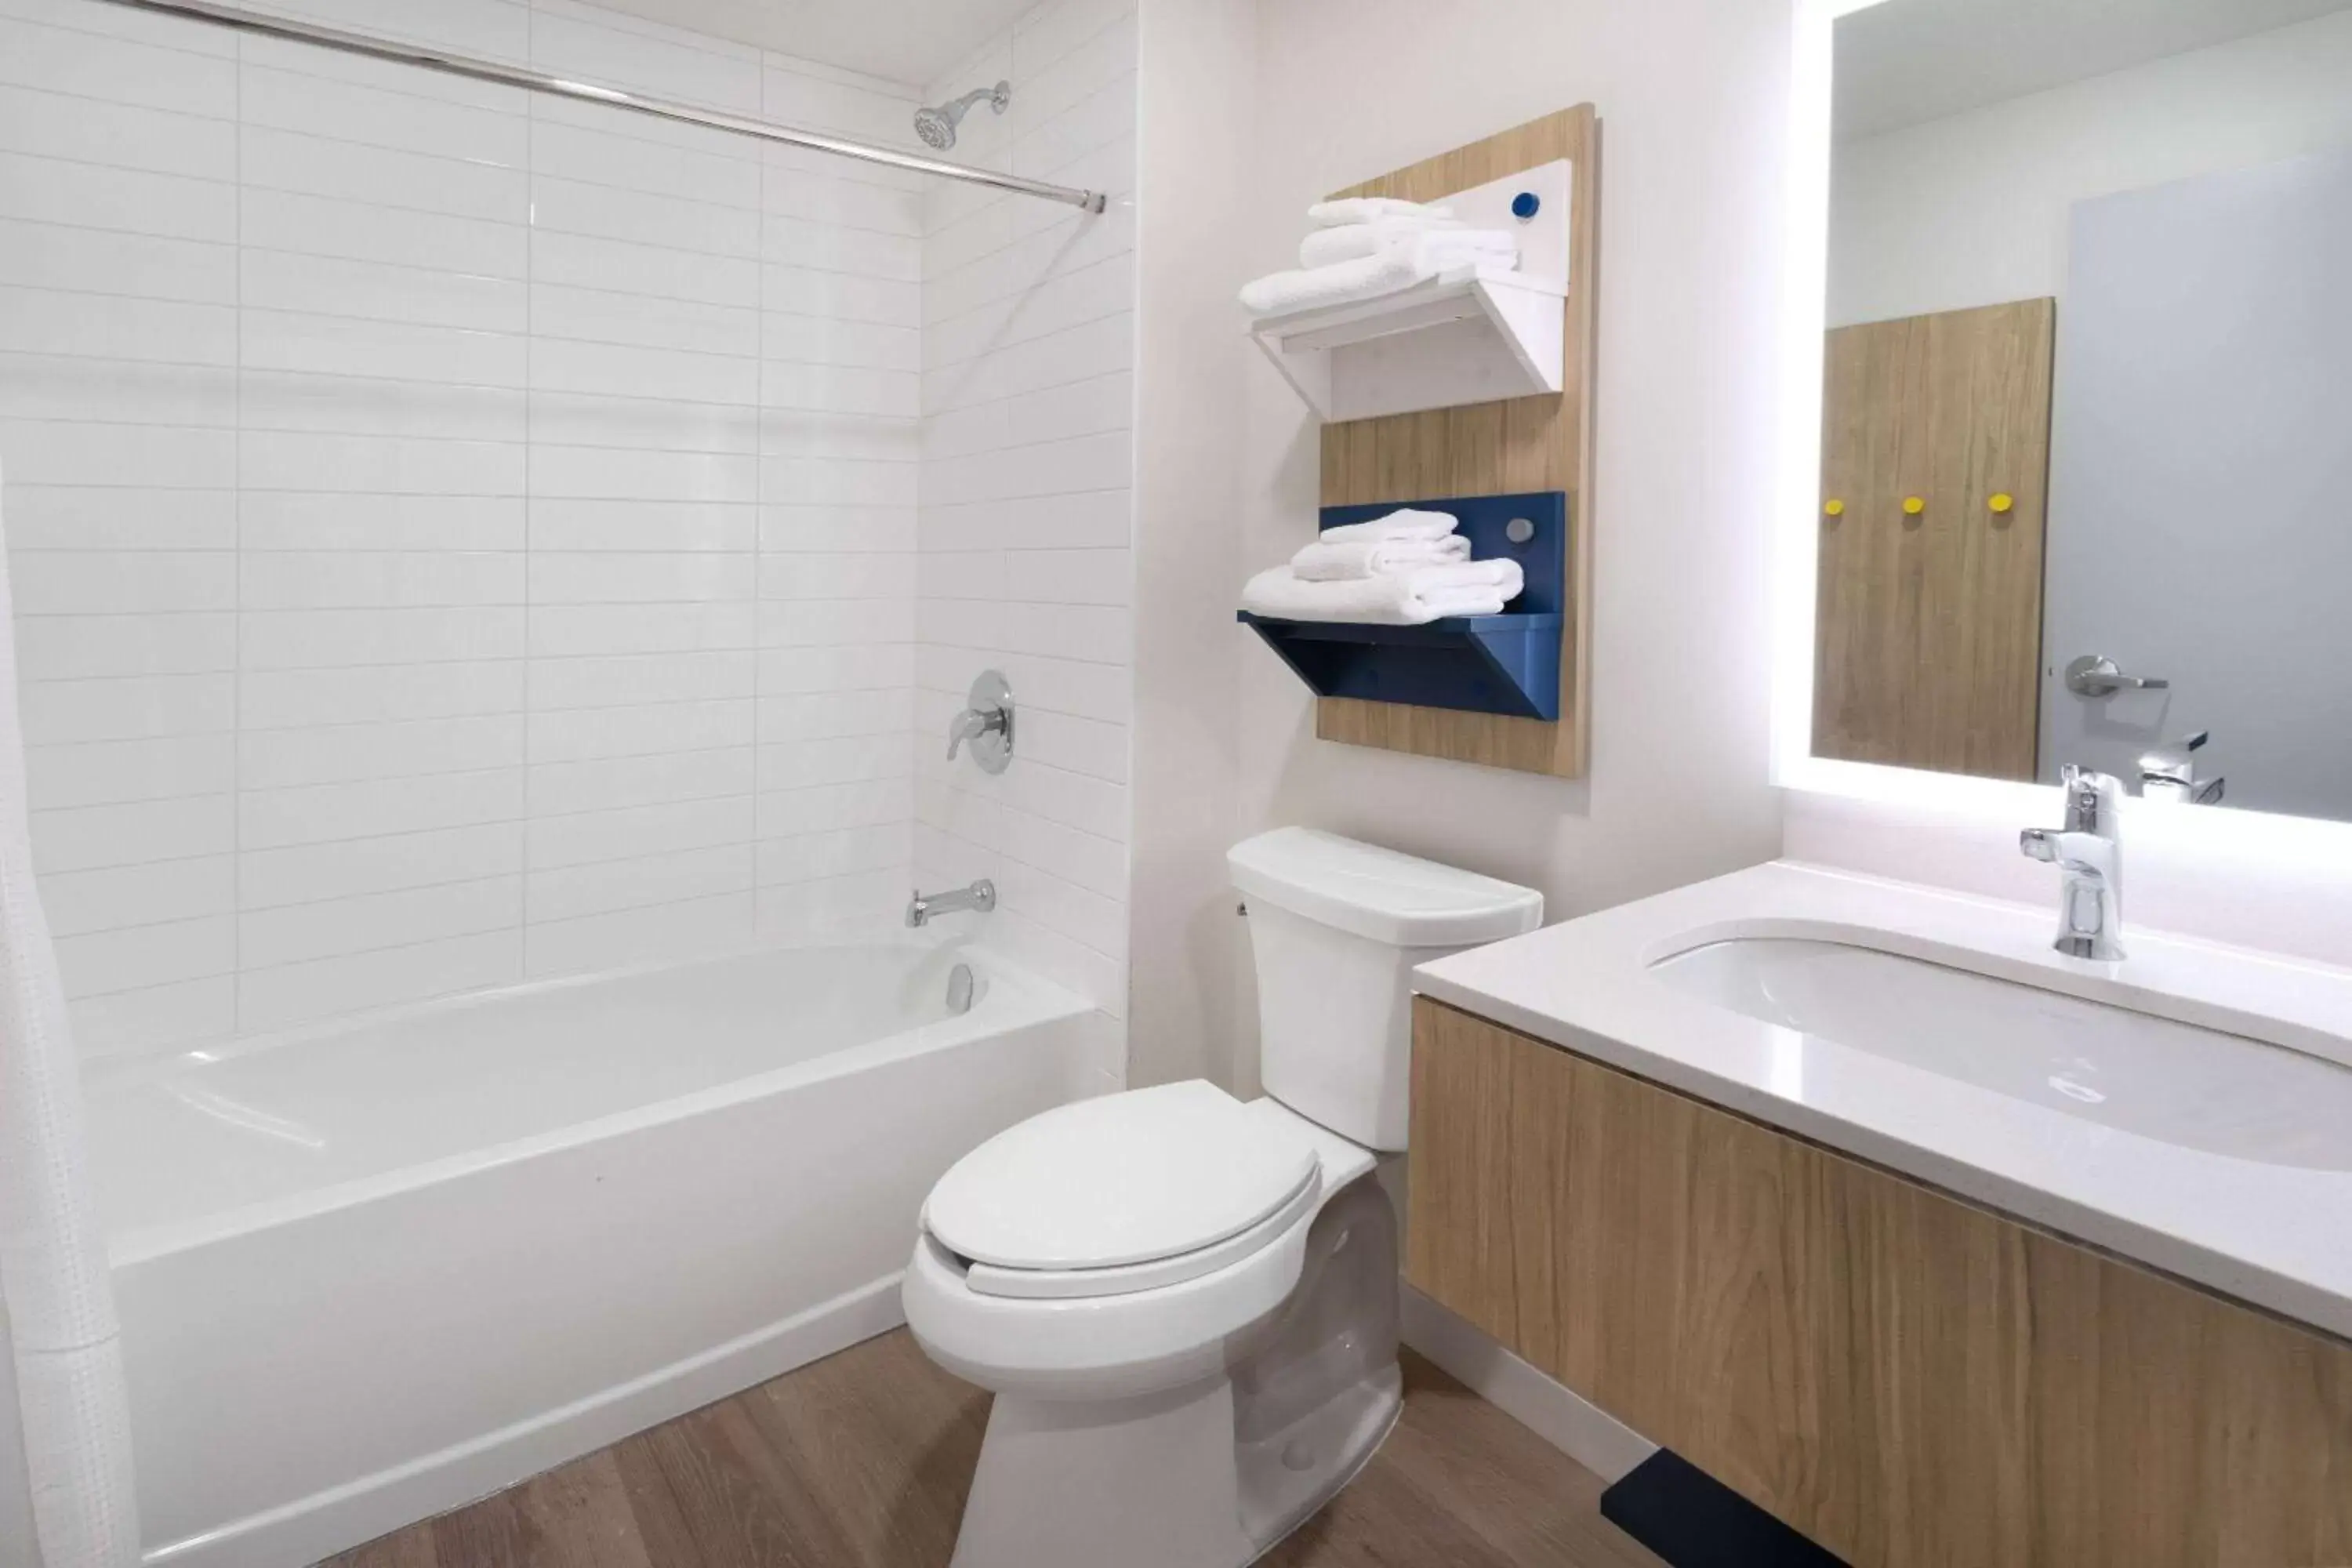 TV and multimedia, Bathroom in Microtel Inn & Suites by Wyndham Summerside